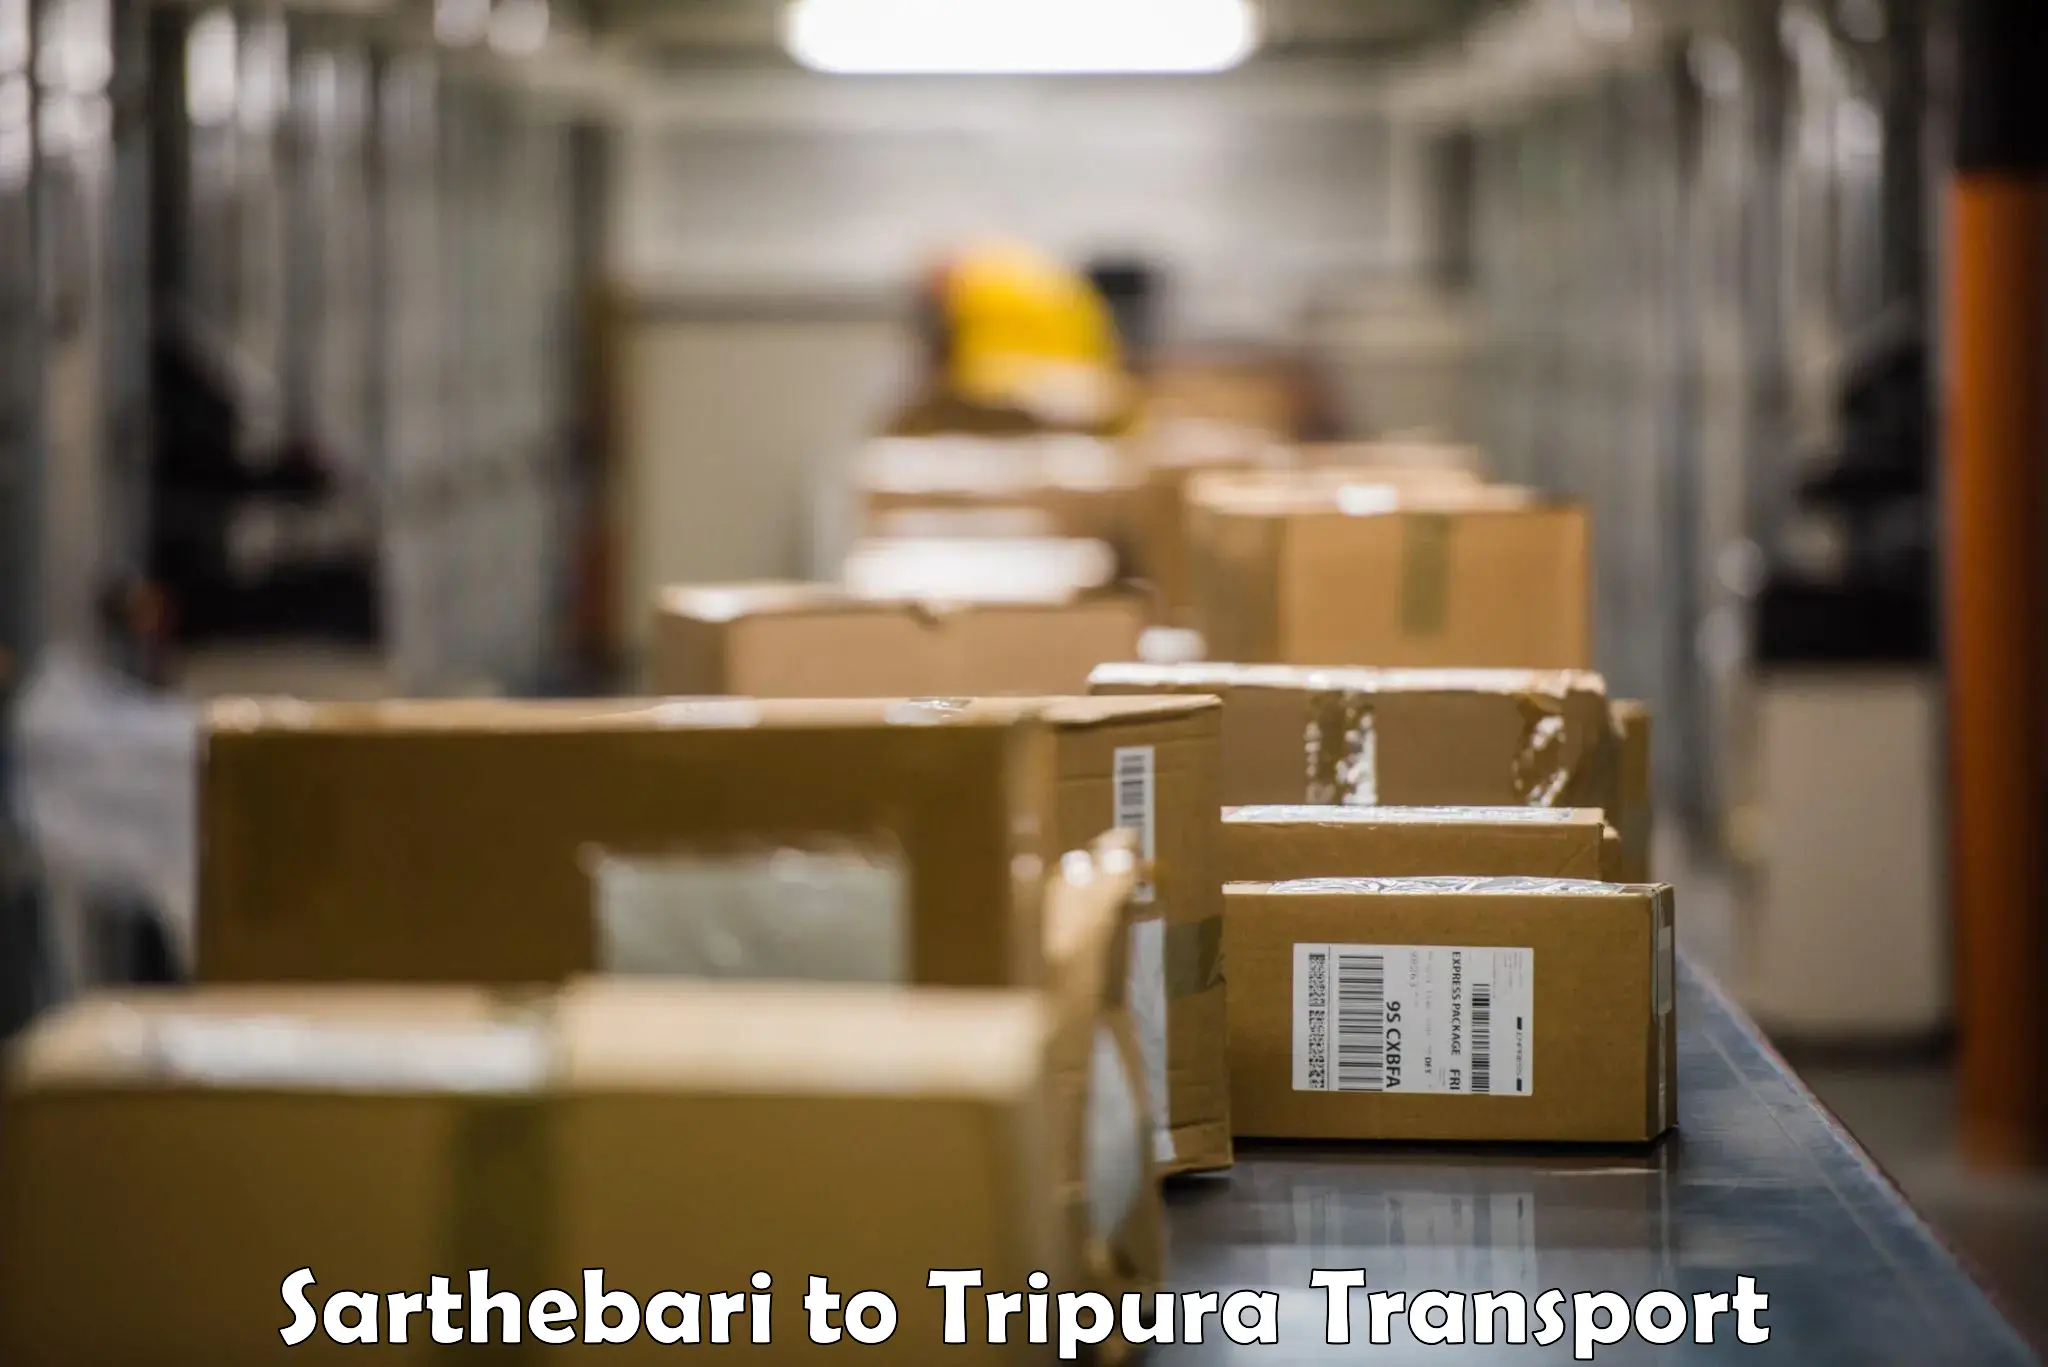 Express transport services Sarthebari to Tripura